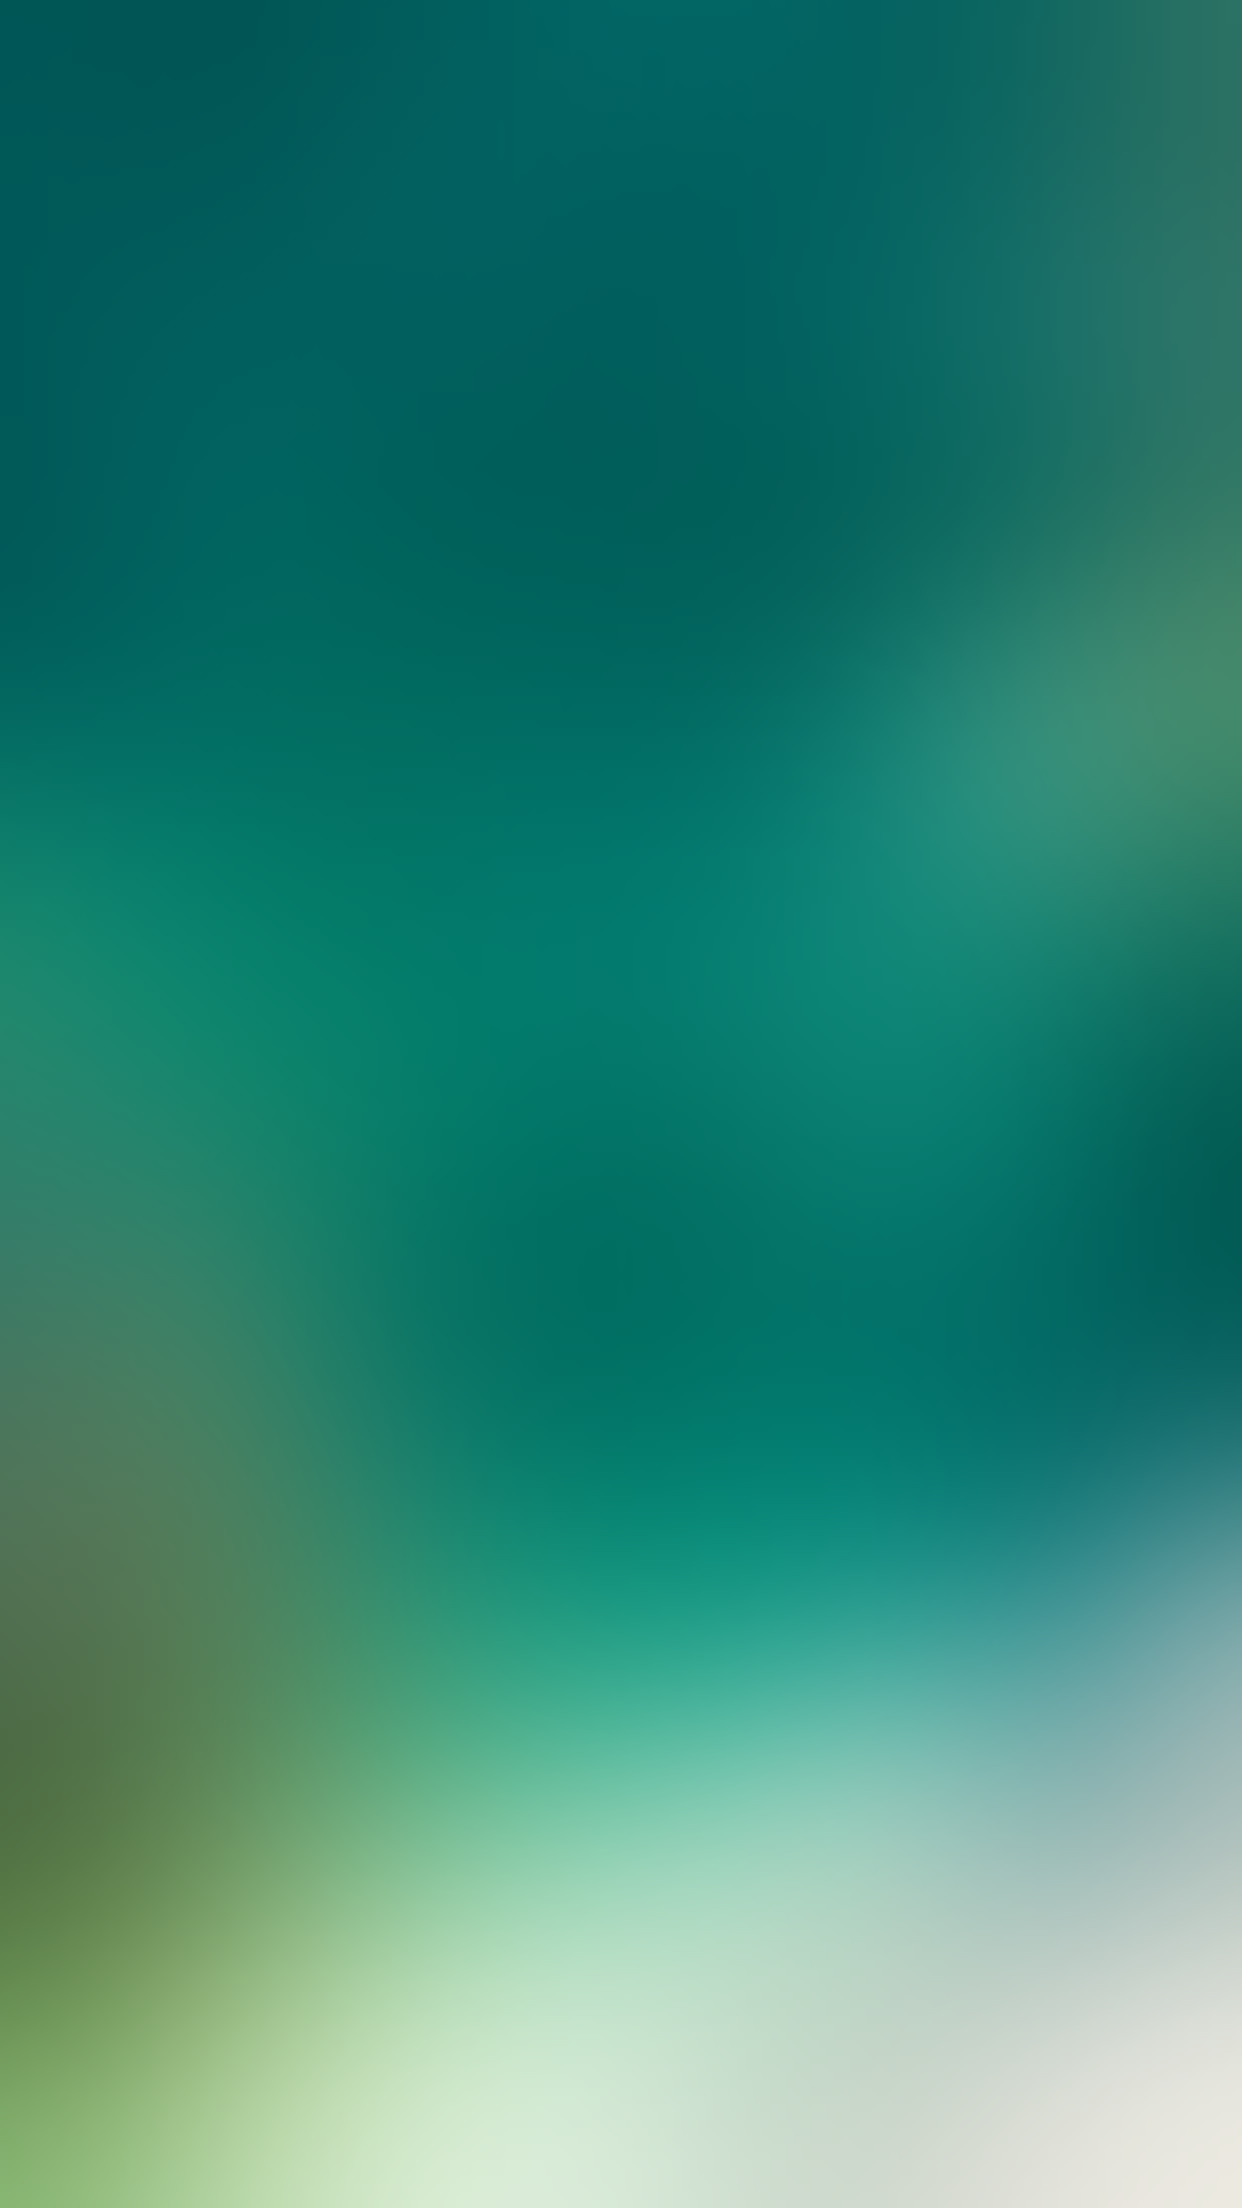 1242x2208 iOS 10 Wallpaper inspired kiwimanjaro splash. Download: gradient; textured  ...